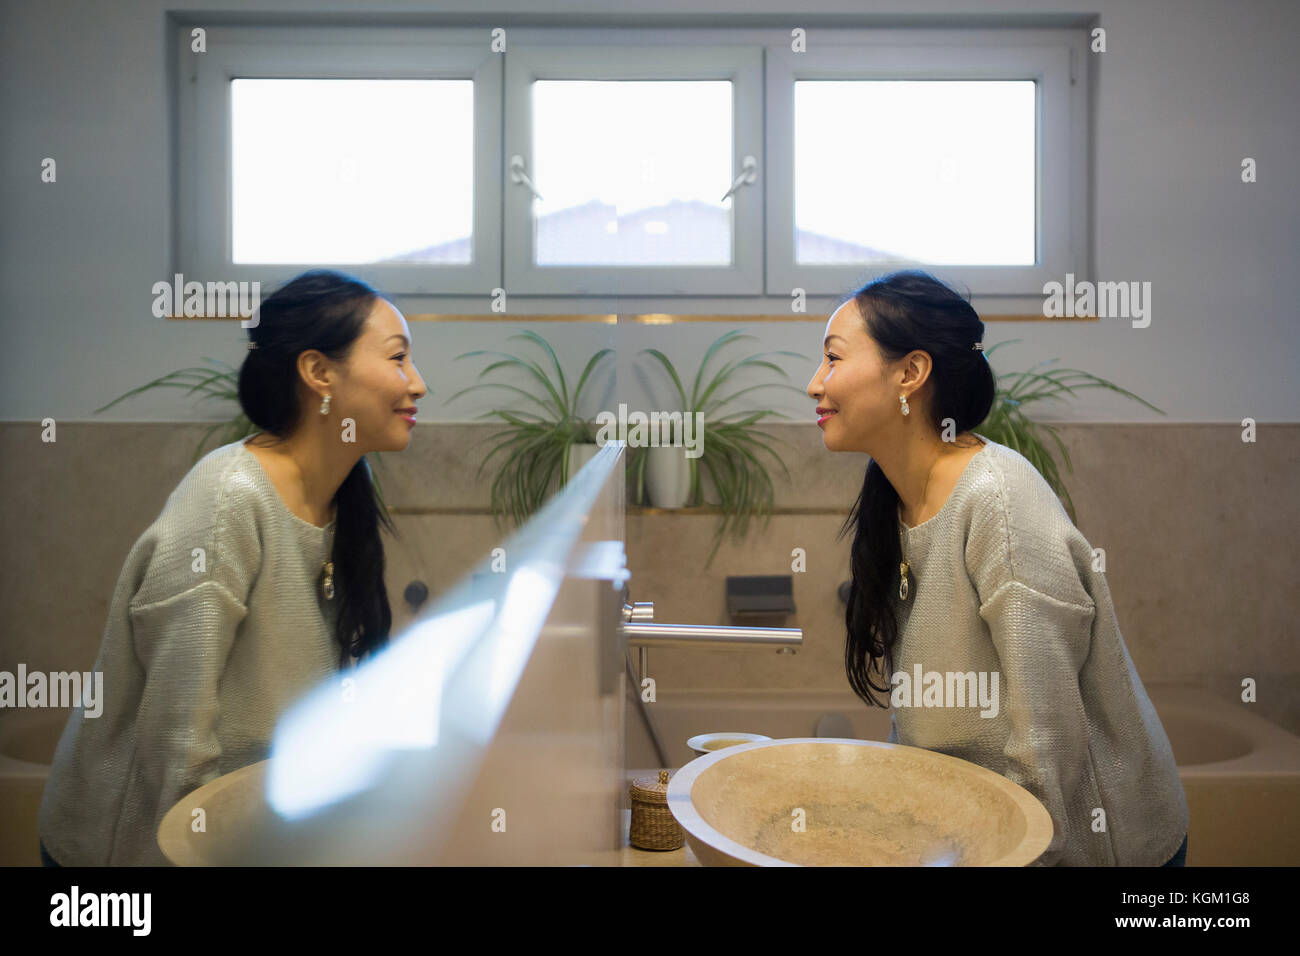 Seitenansicht der lächelnden reife Frau im Spiegel Reflexion in Bad Stockfoto